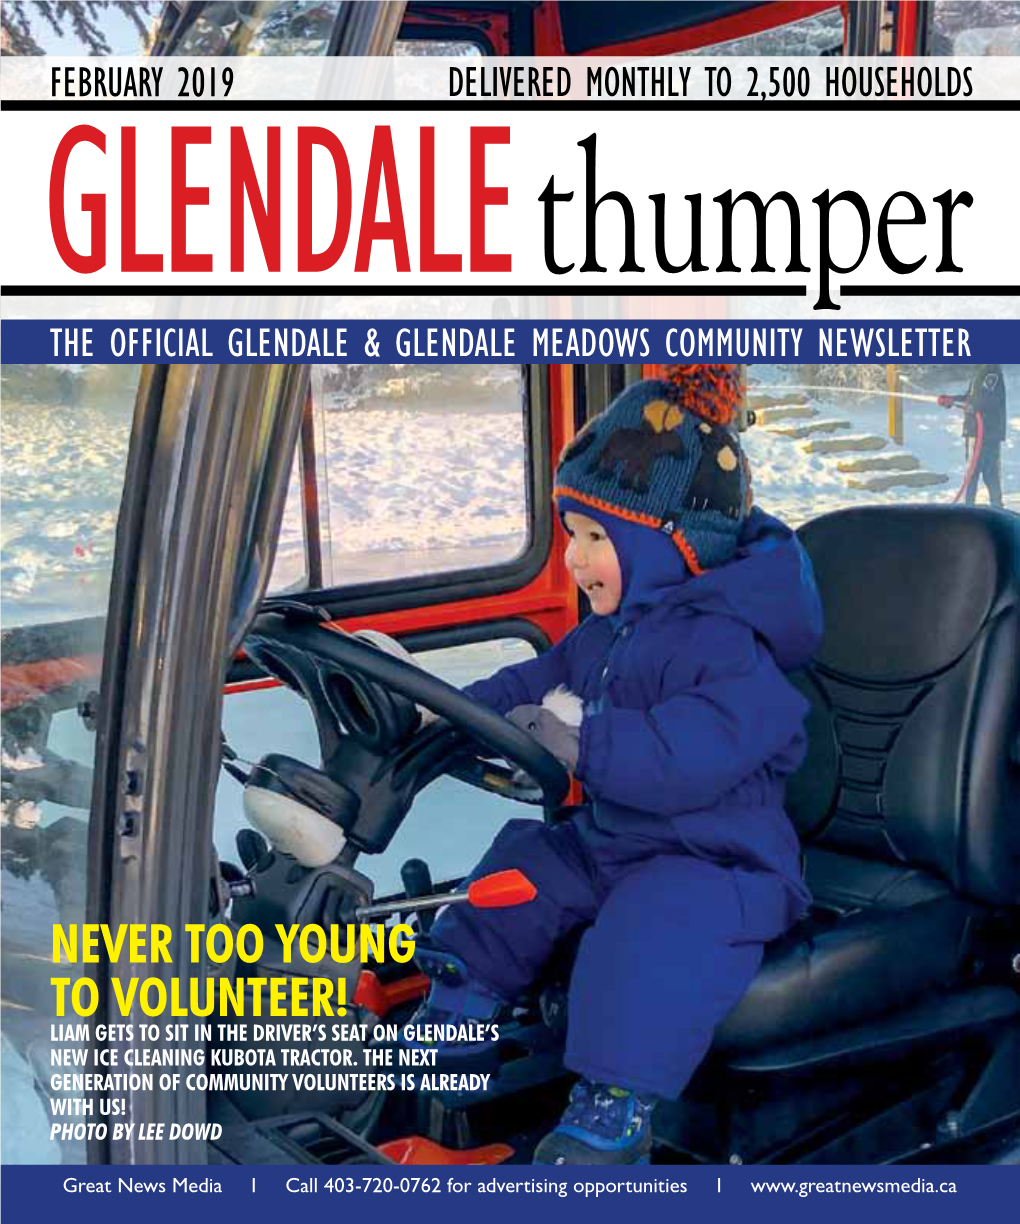 Glendalethumper the OFFICIAL Glendale & Glendale Meadows COMMUNITY Newsletter